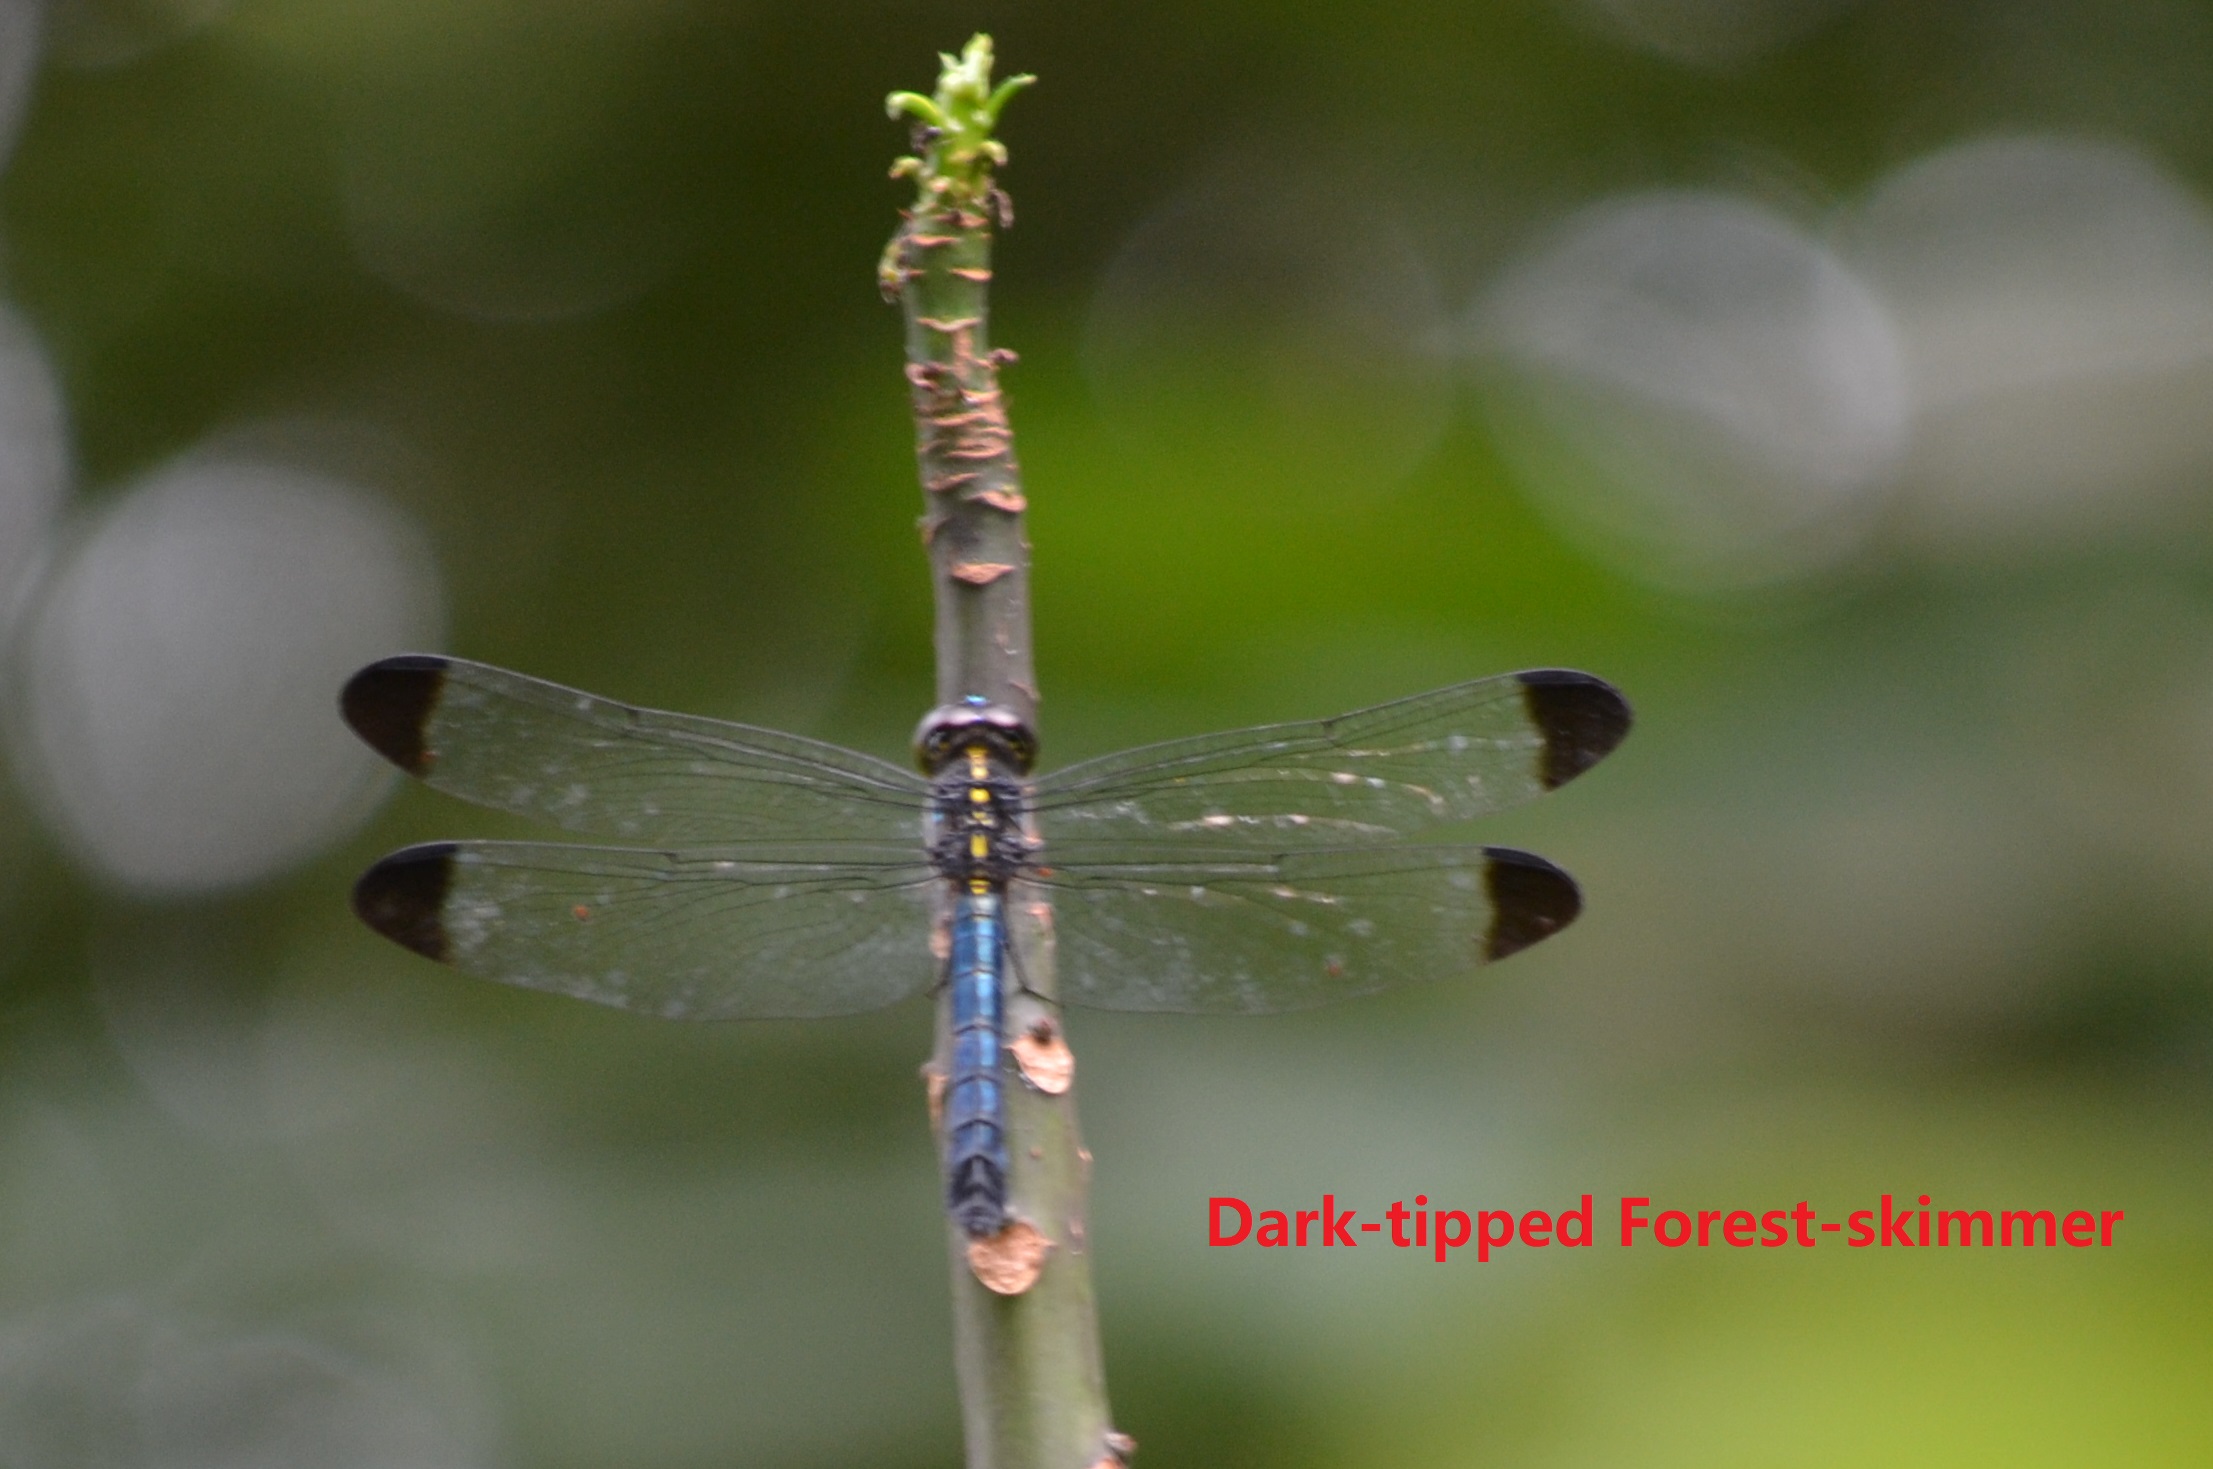 Dark-tipped forest-skimmer